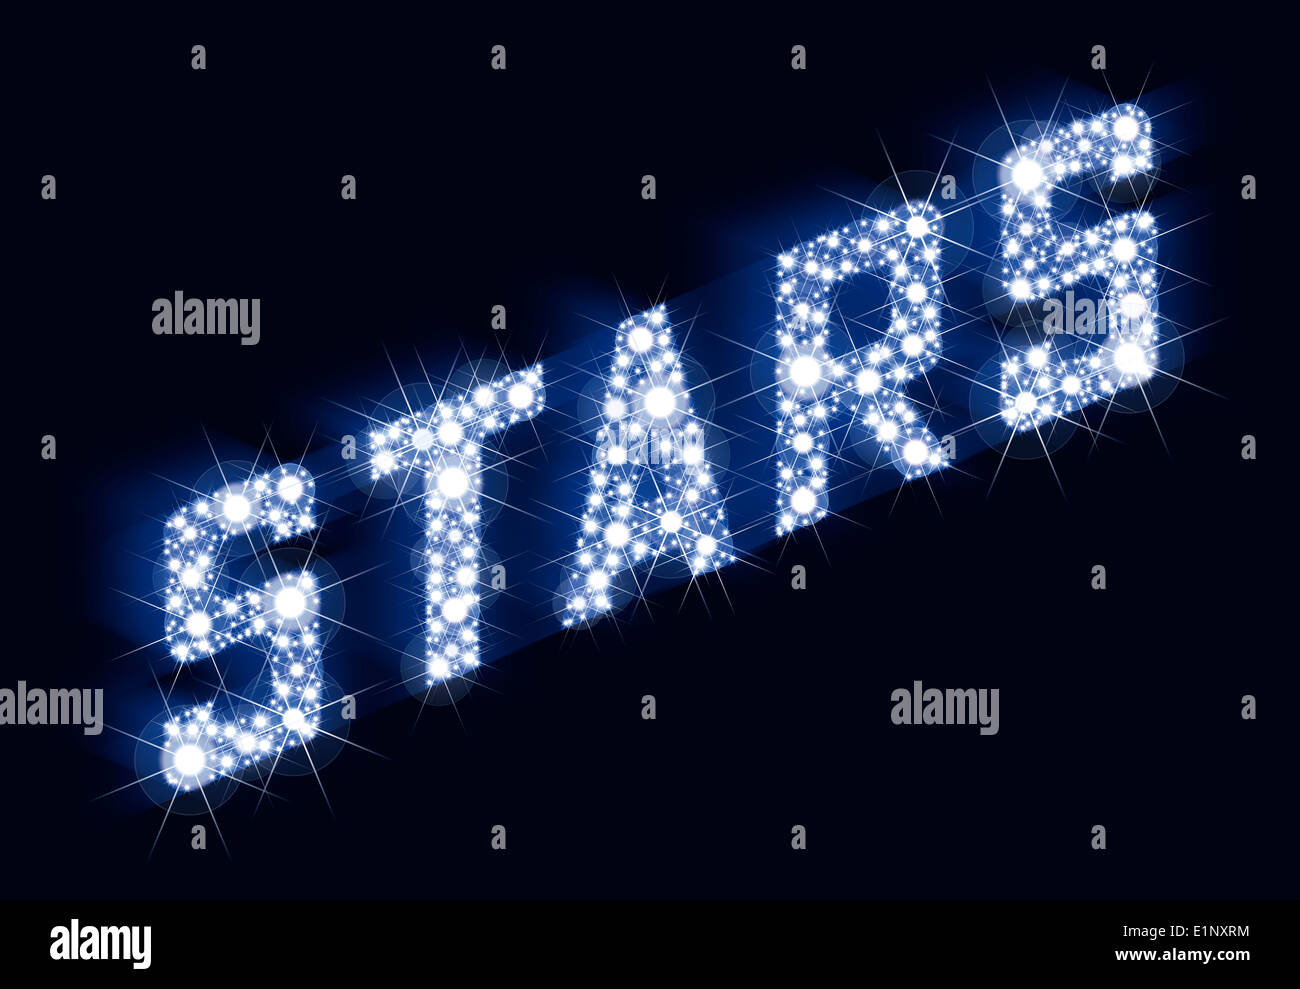 Stelle scintillanti scritte fatte di stelle - un sacco di stelle come risultato il lettering stelle. Immagine su sfondo nero. Foto Stock